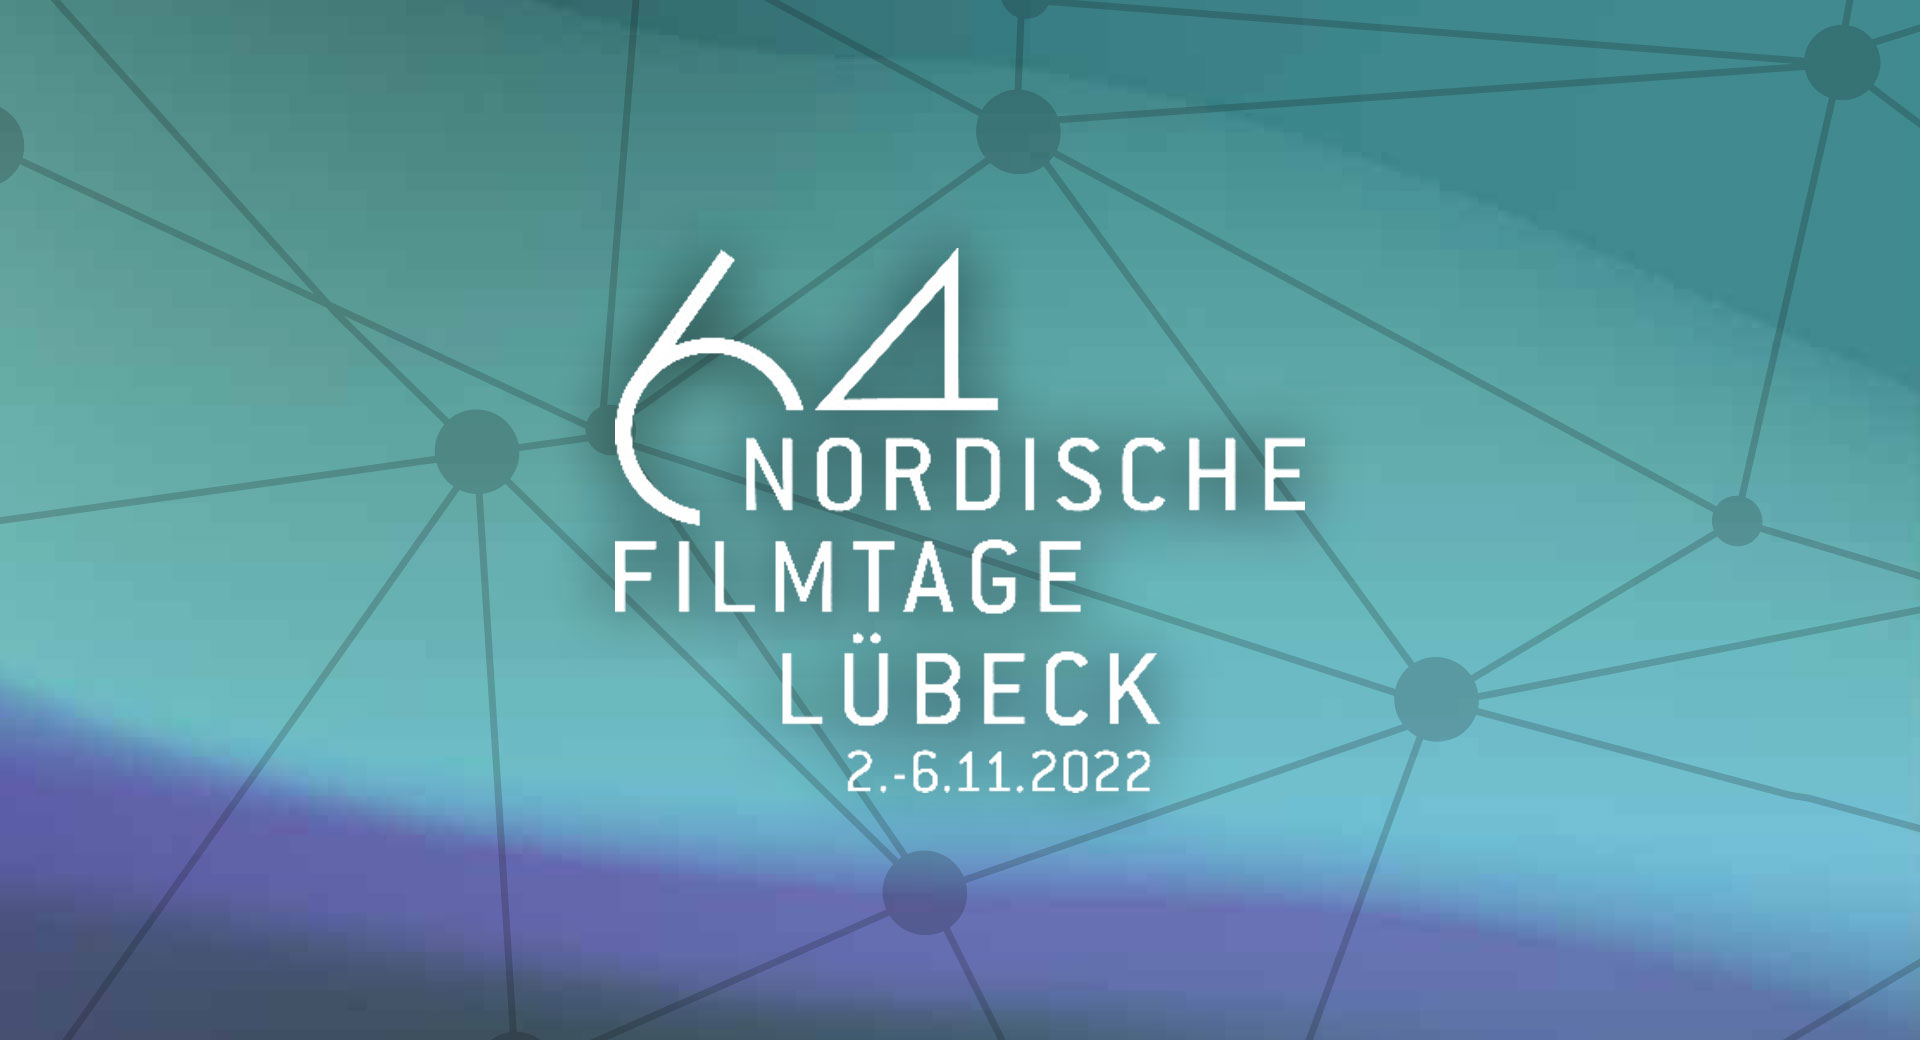 Nordische Filmtage Lübeck